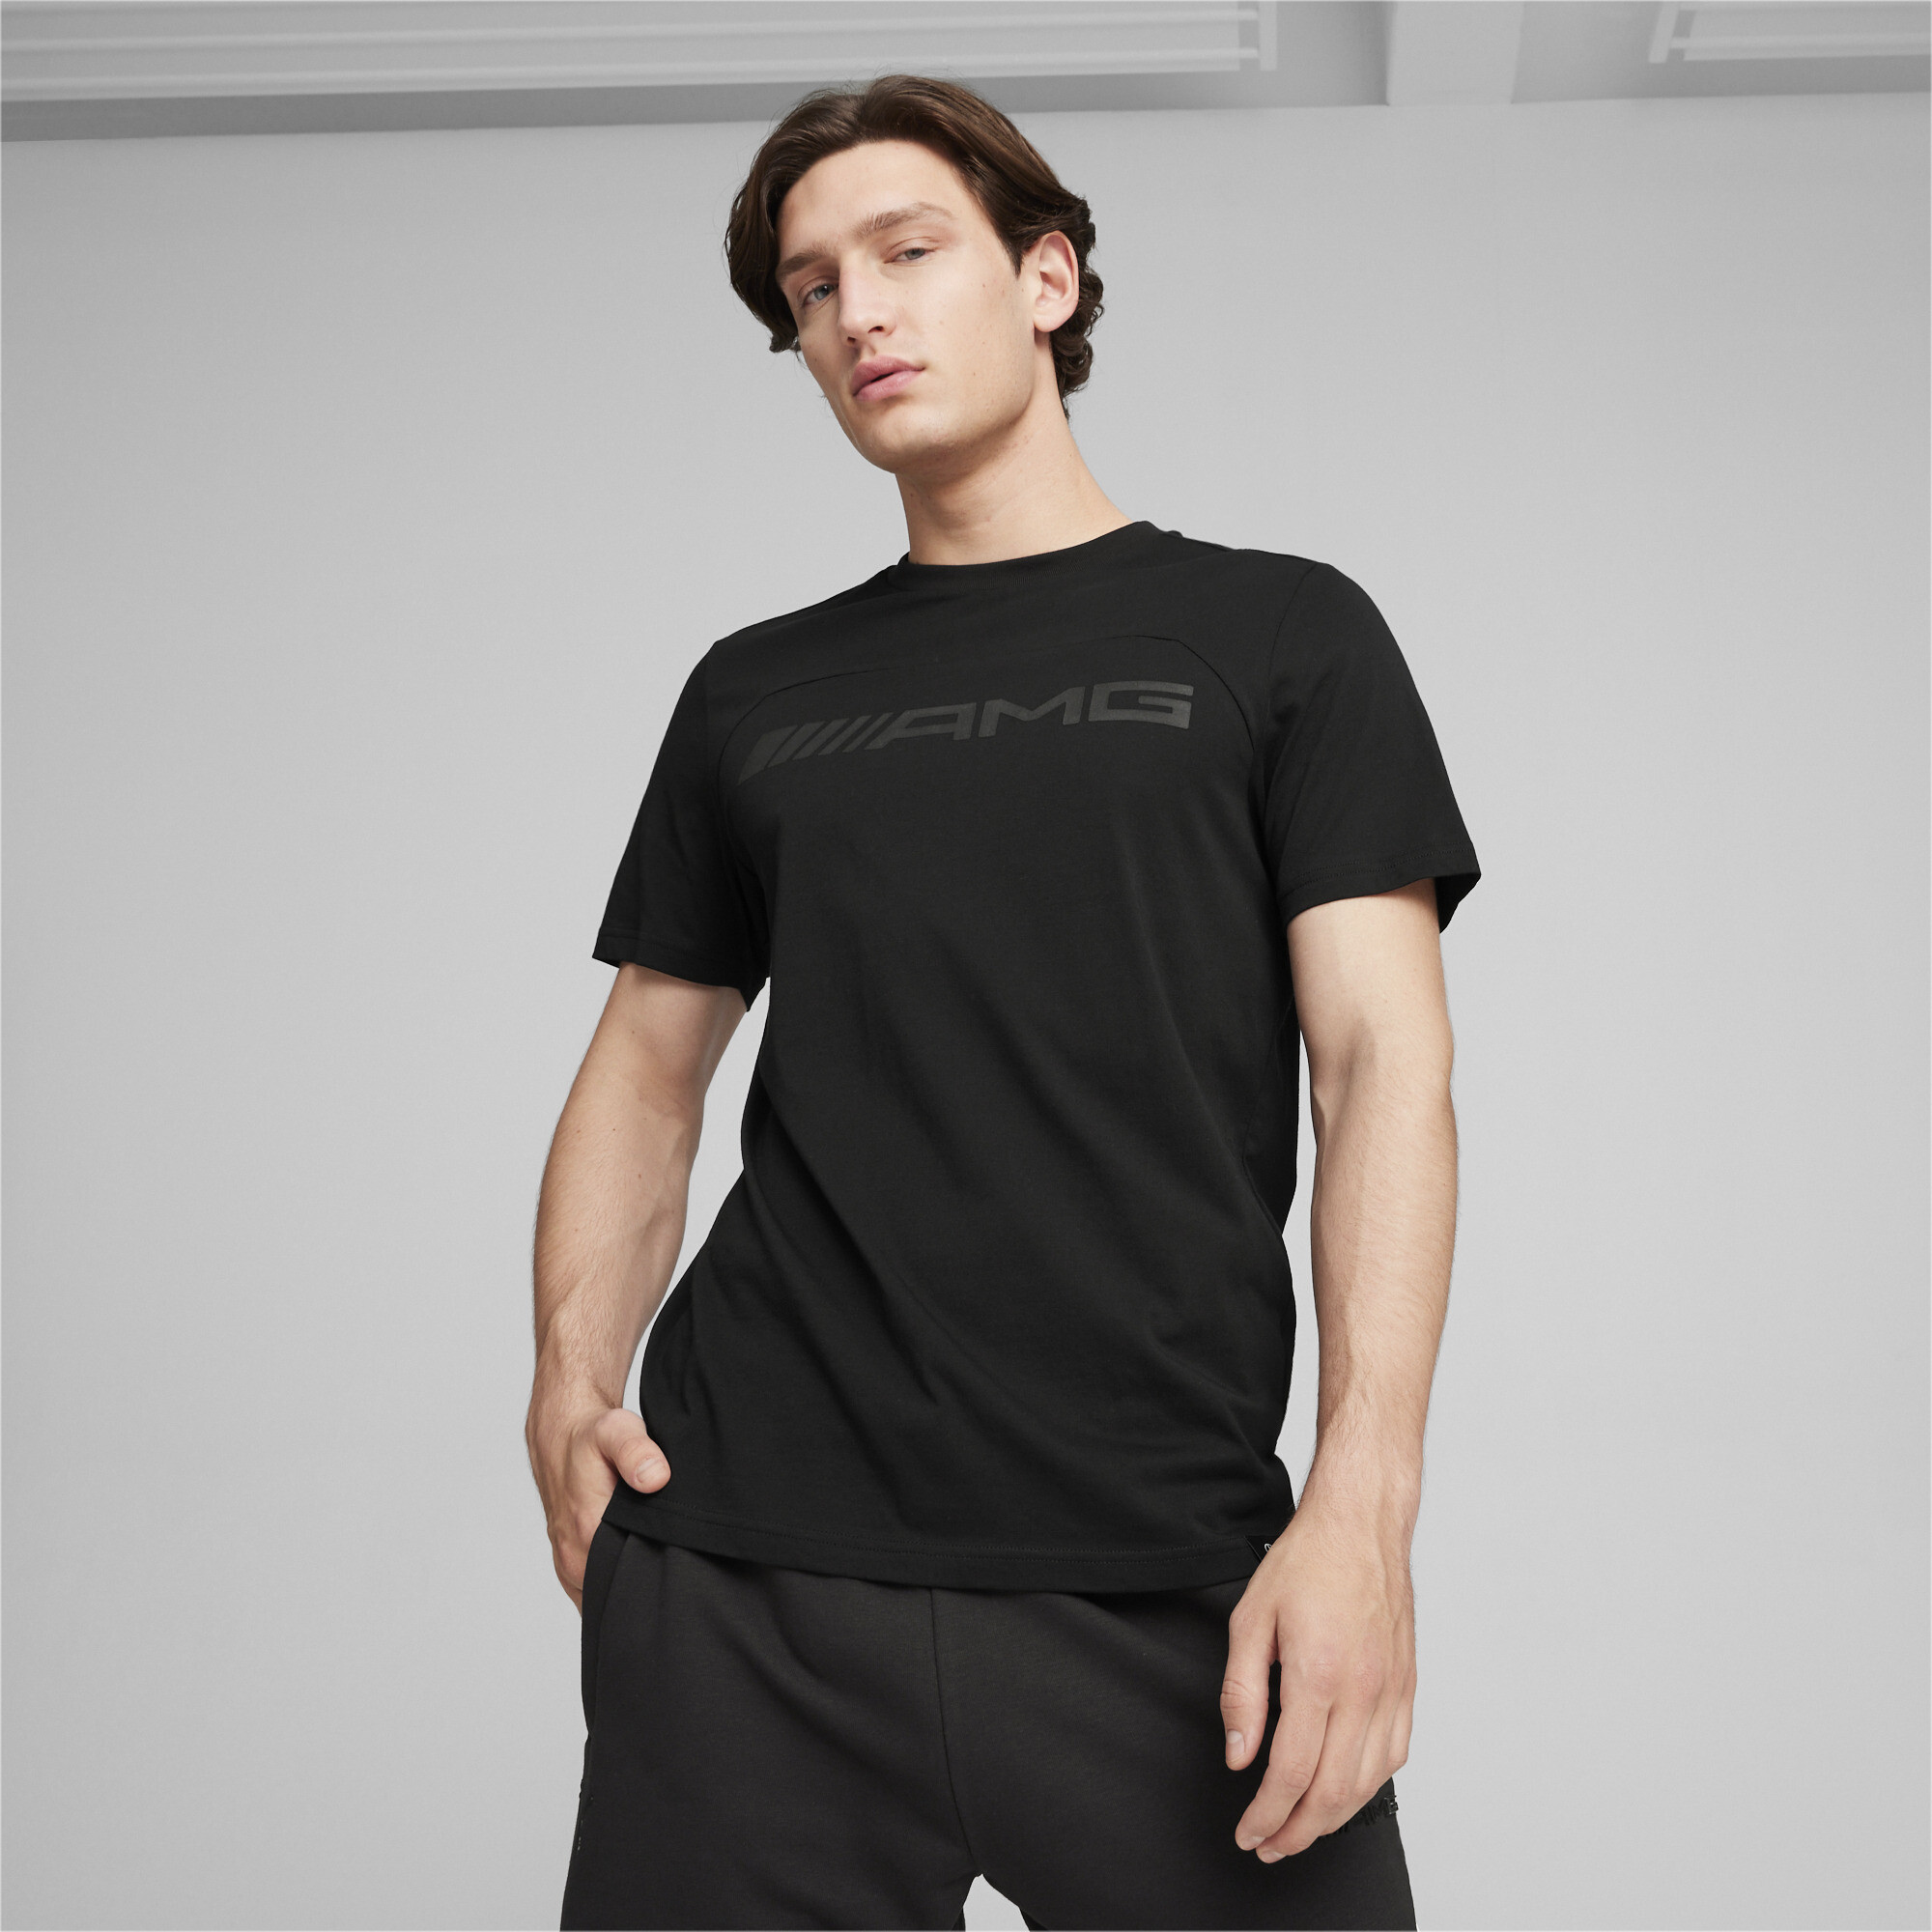 Men's Puma AMG Motorsports T-Shirt, Black, Size M, Clothing